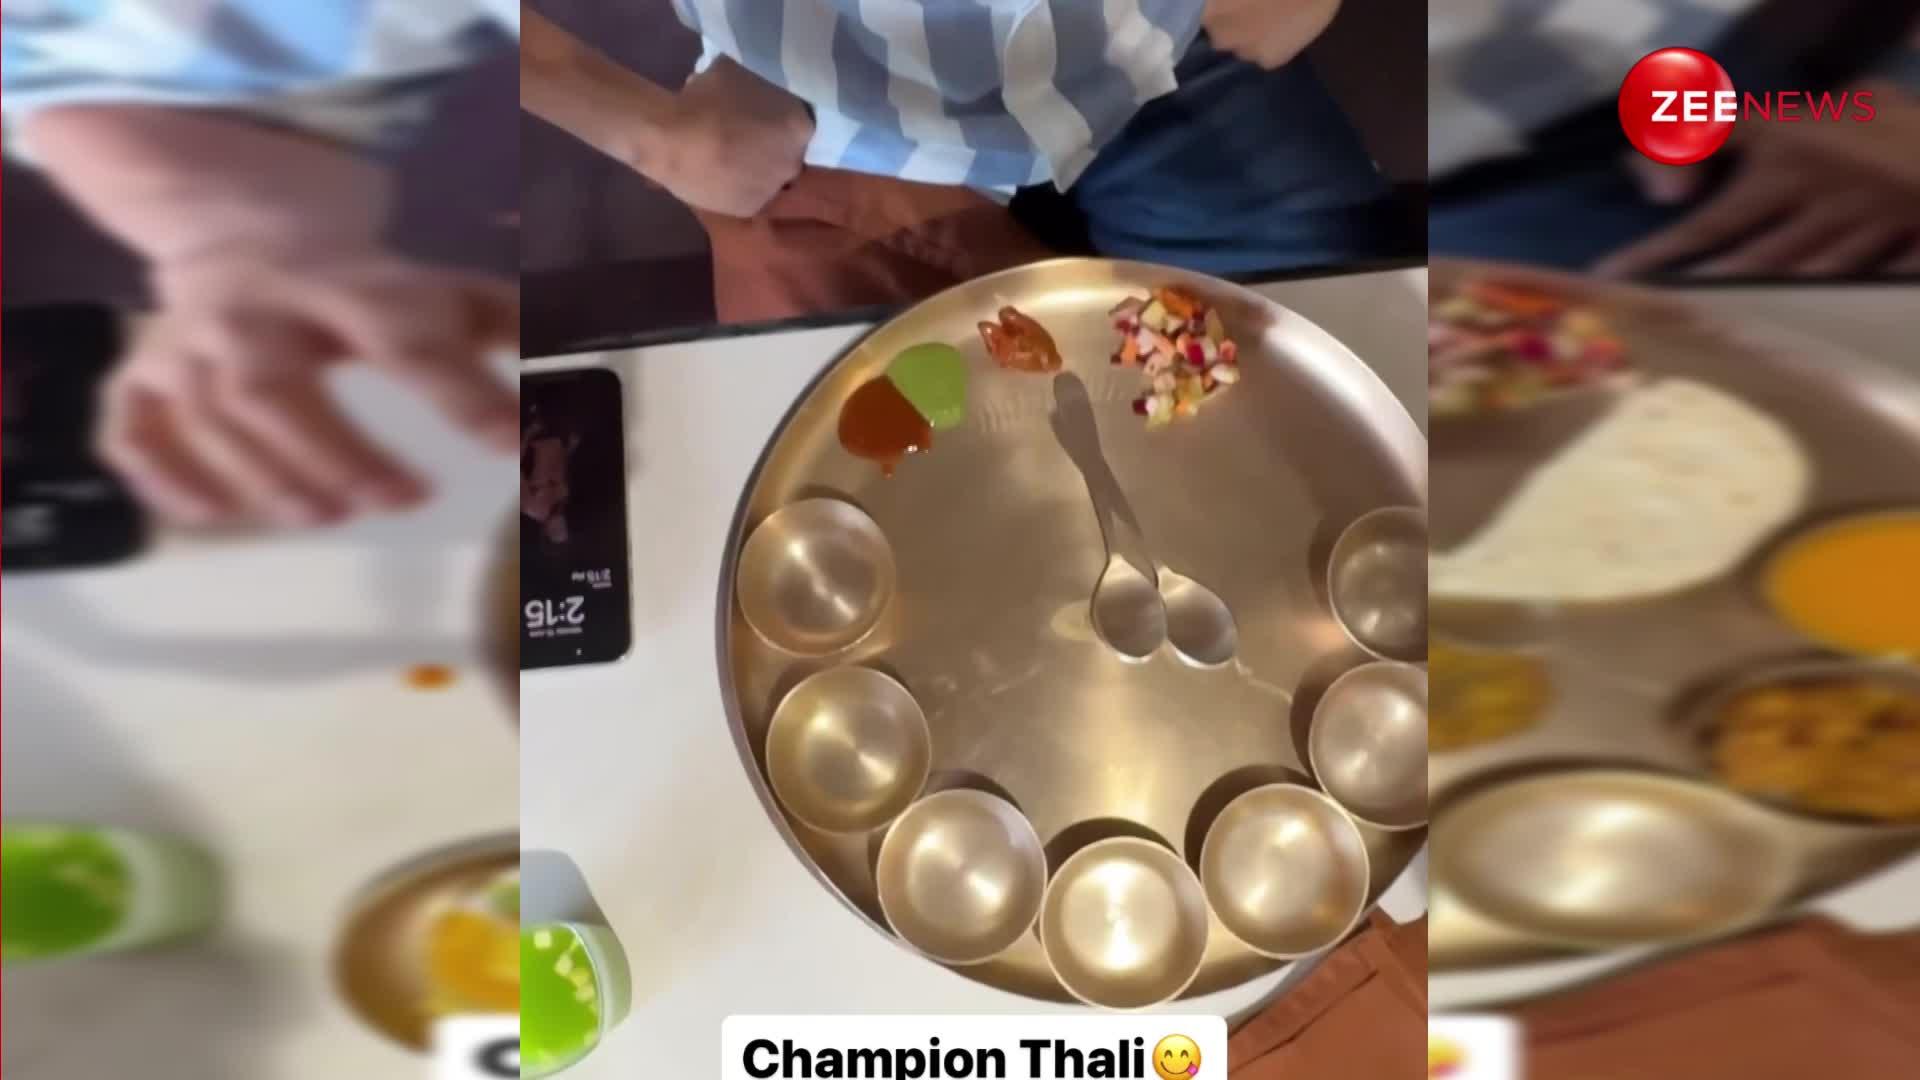 VIDEO: अहमदाबाद में Kartik Aaryan ने खाई चैम्पियन थाली, इतना खाना देख हाथ जोड़कर बोले-बस-बस